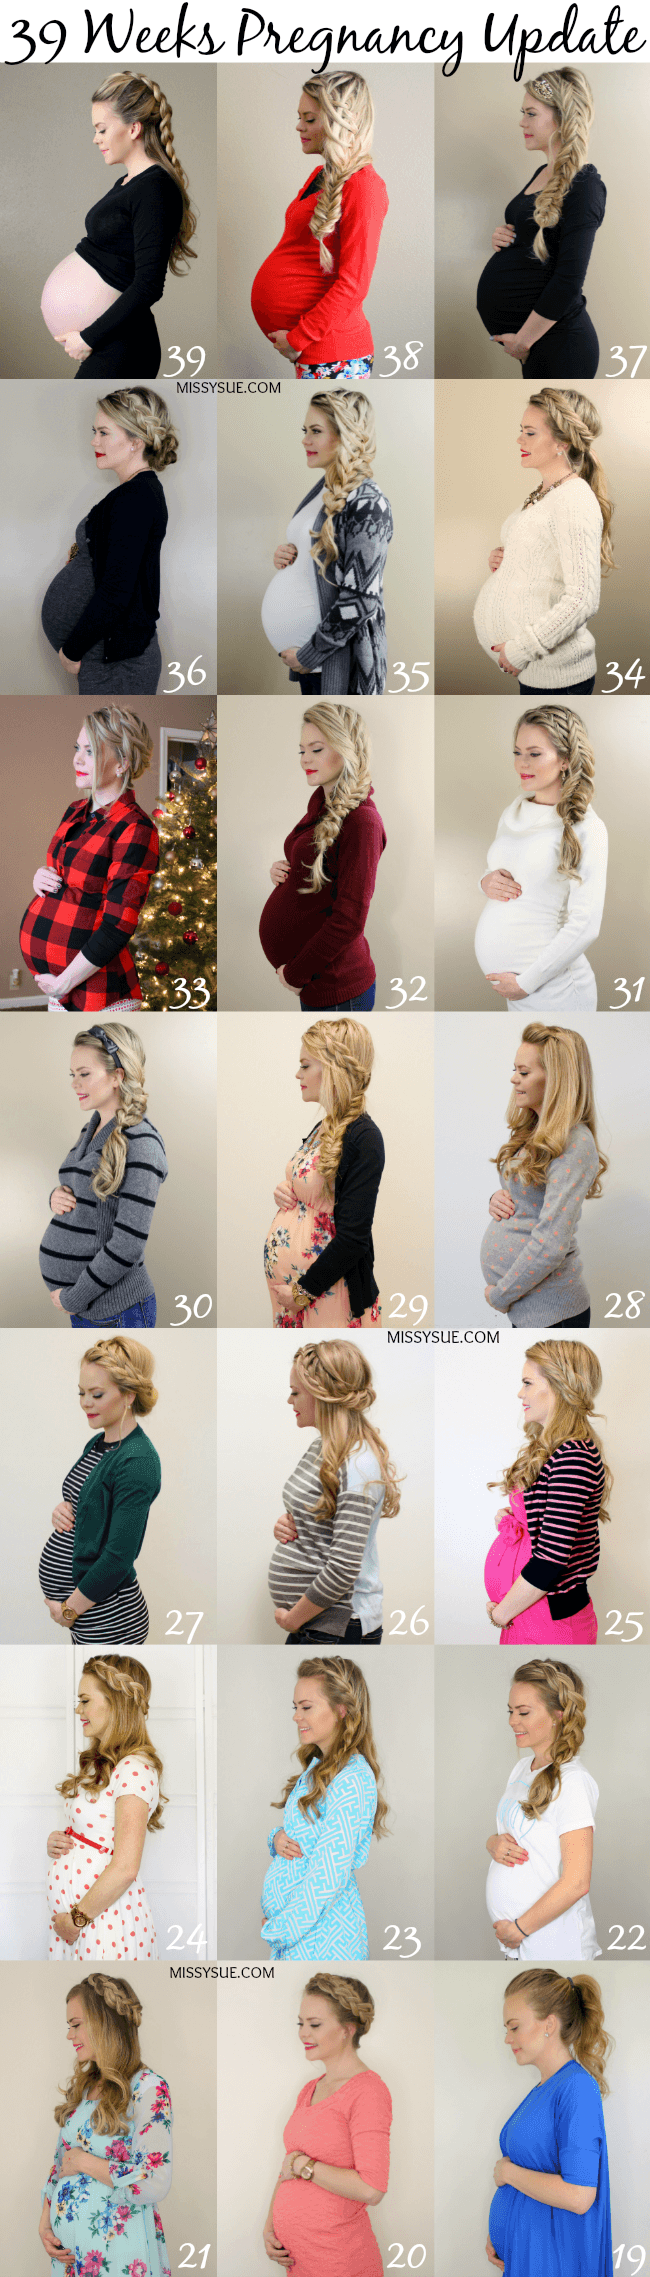 39 Weeks Pregnancy Update